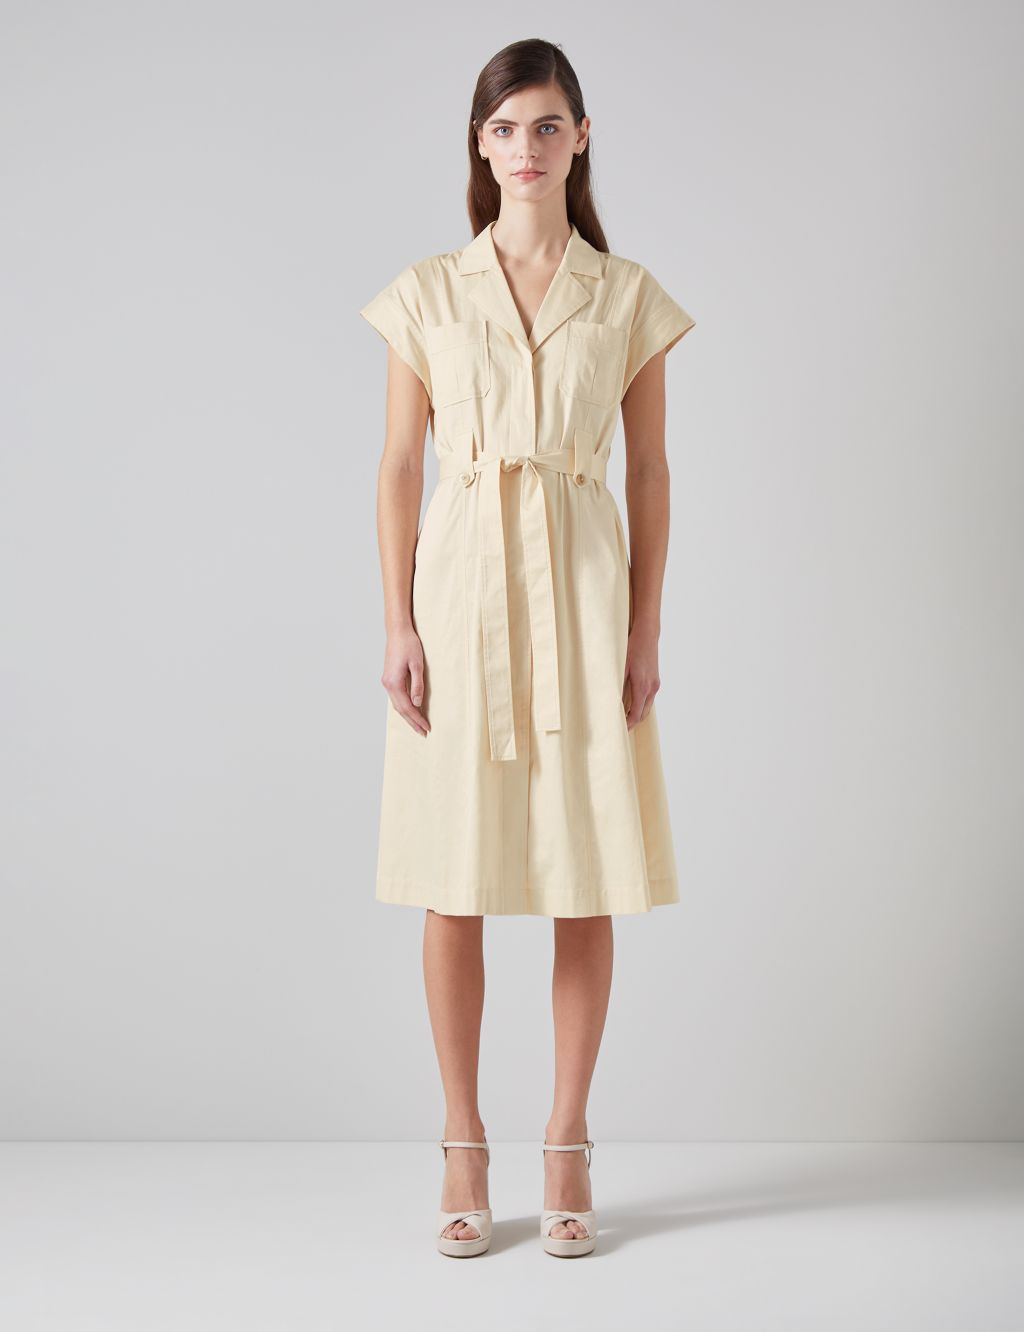 MINSURE Women Flannel Plaid Shirt Dress Button Down Long Sleeve